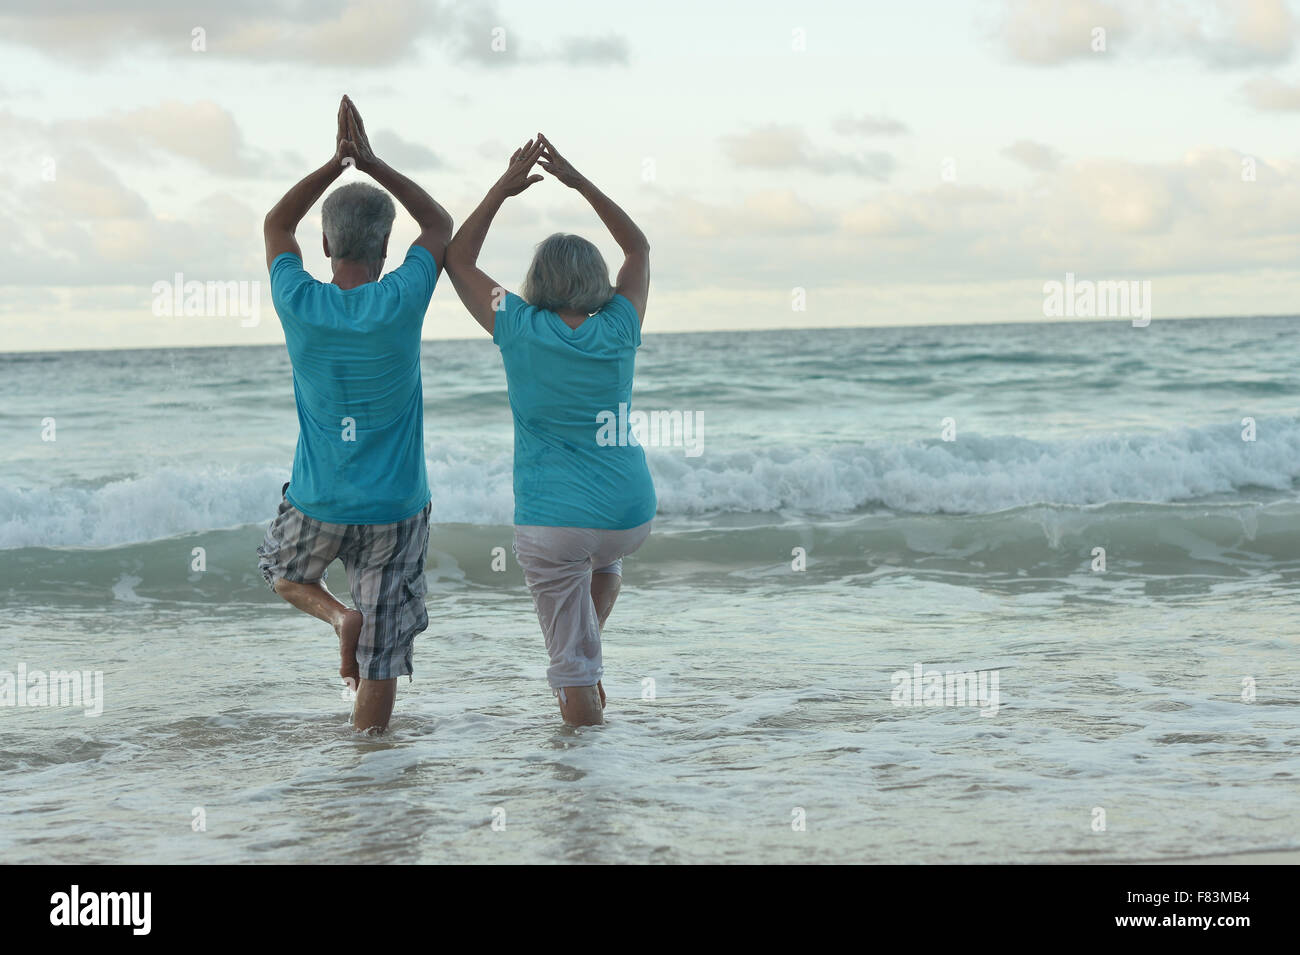 Vieux couple doing yoga on beach Banque D'Images